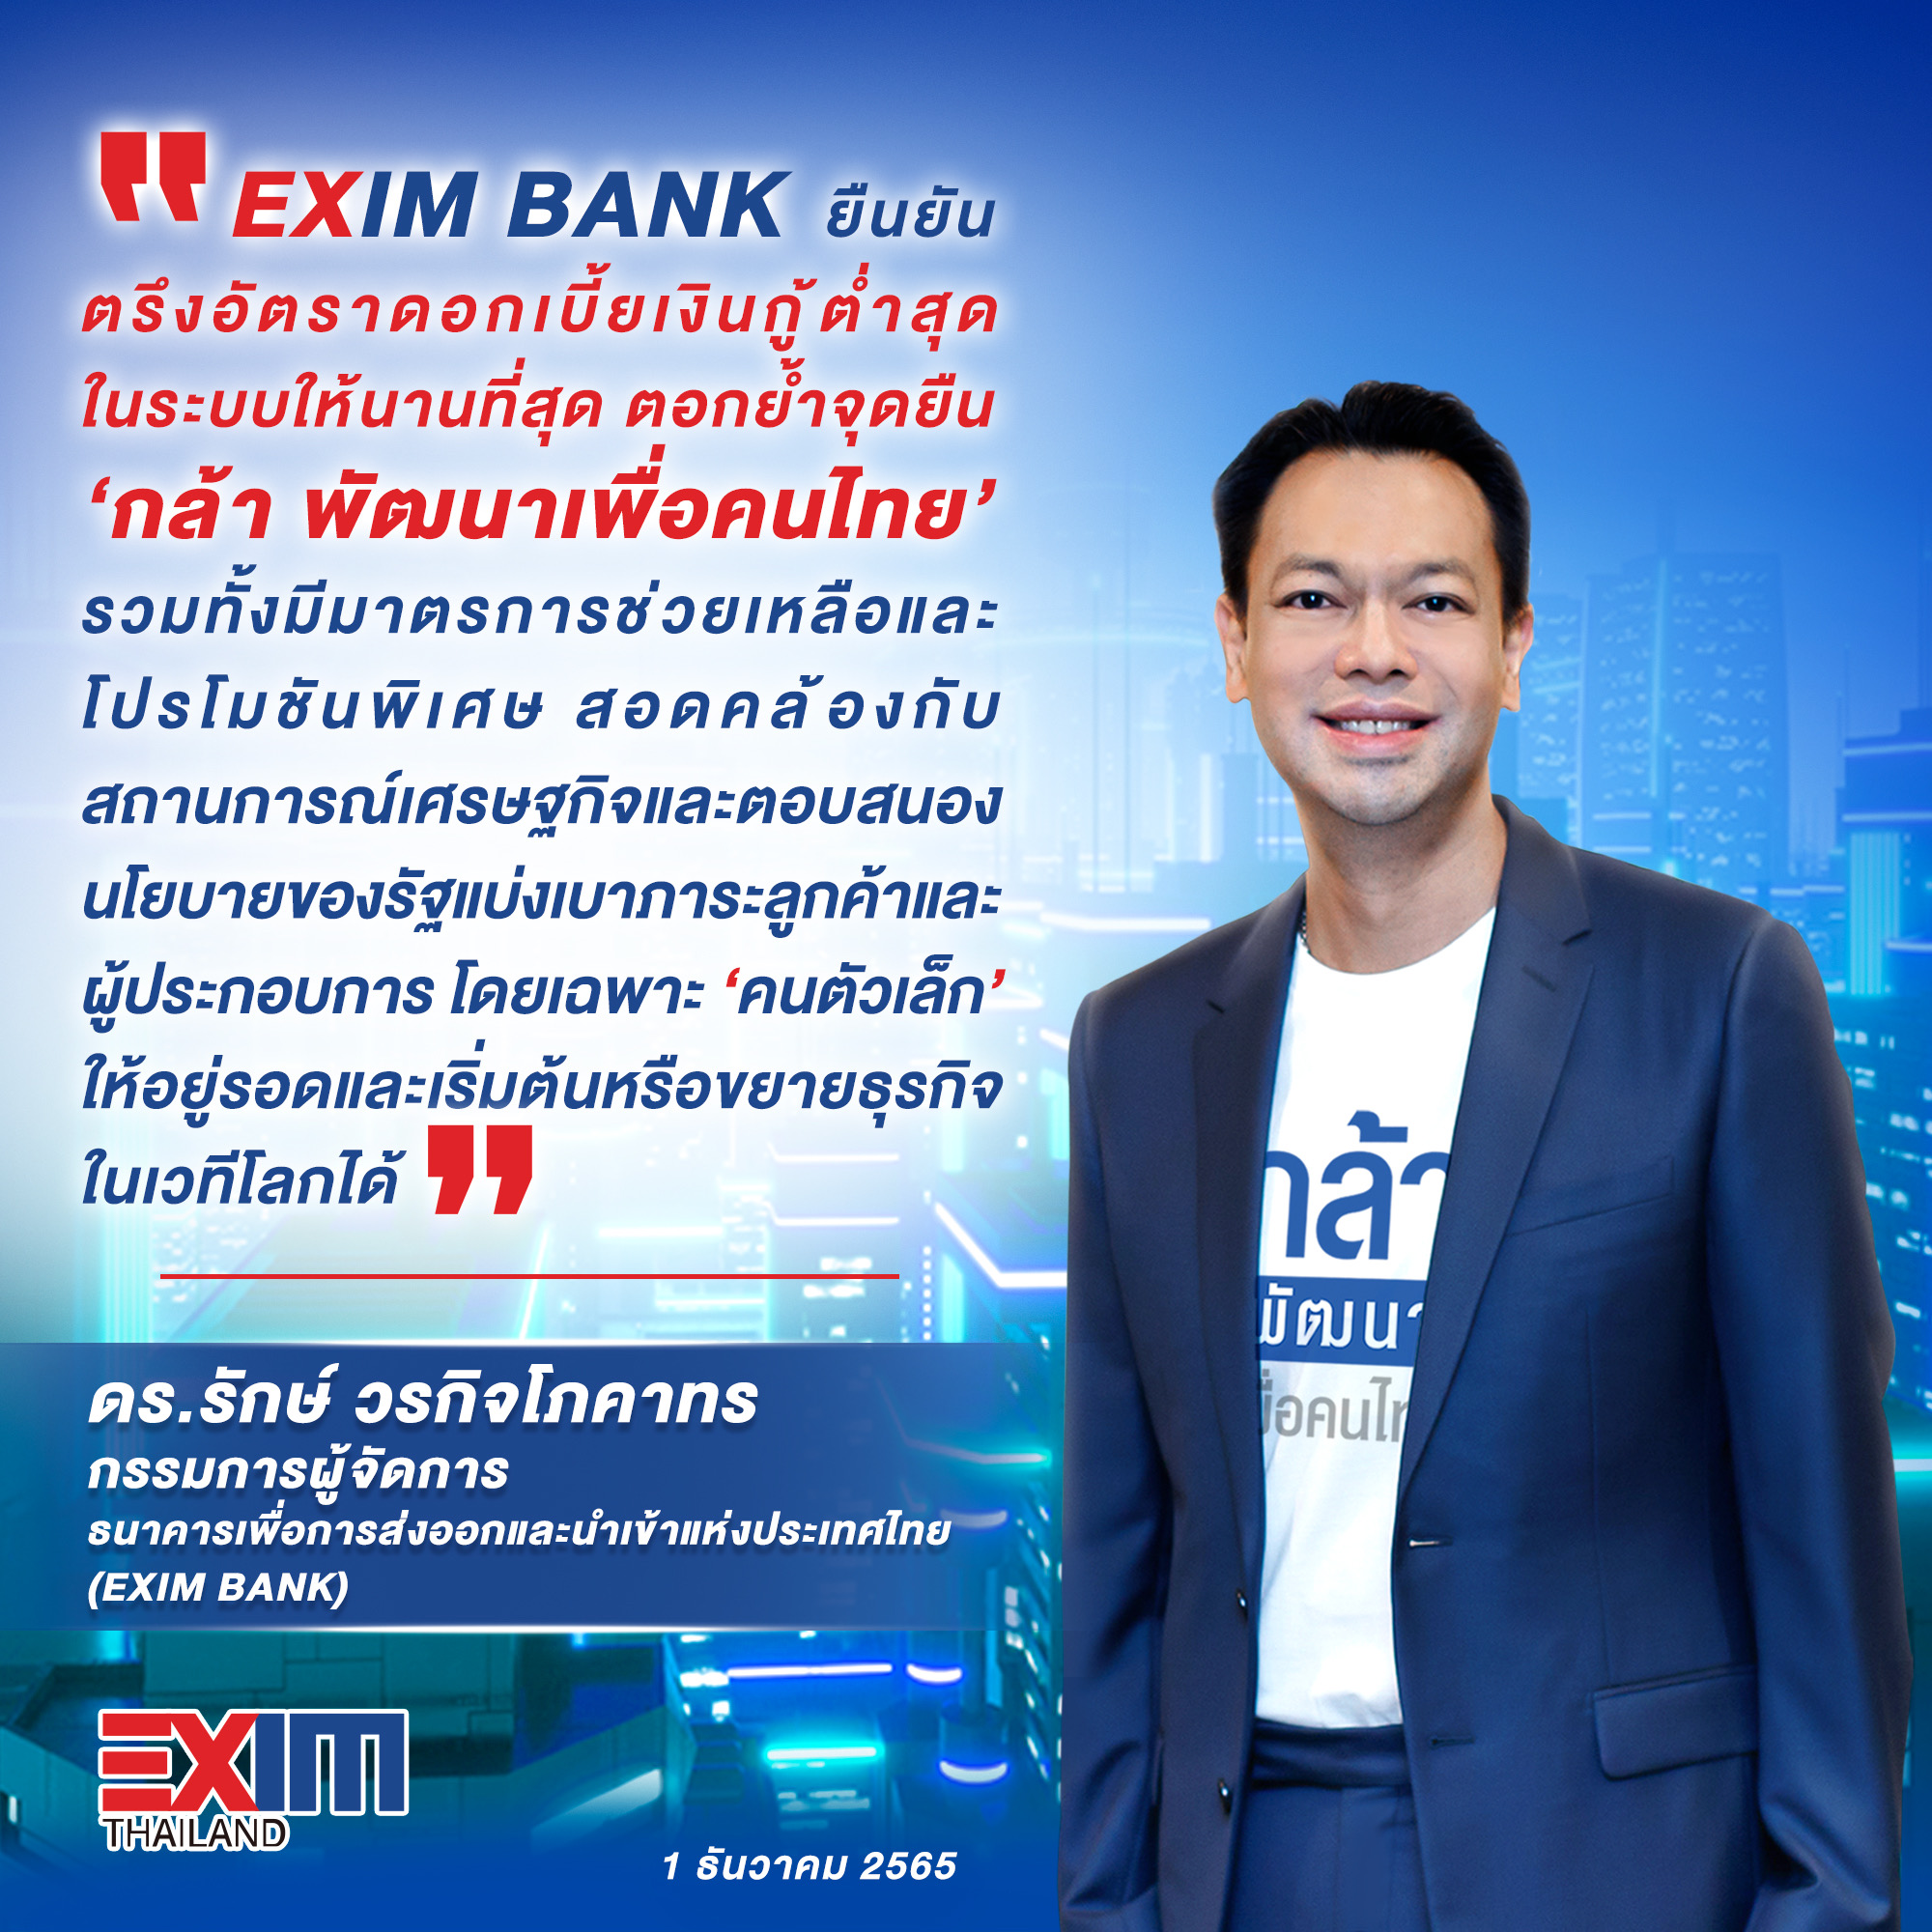 EXIM BANK ยืนยันตรึงอัตราดอกเบี้ยเงินกู้ต่ำสุดในระบบให้นานที่สุด ตอกย้ำจุดยืน “กล้า พัฒนาเพื่อคนไทย”